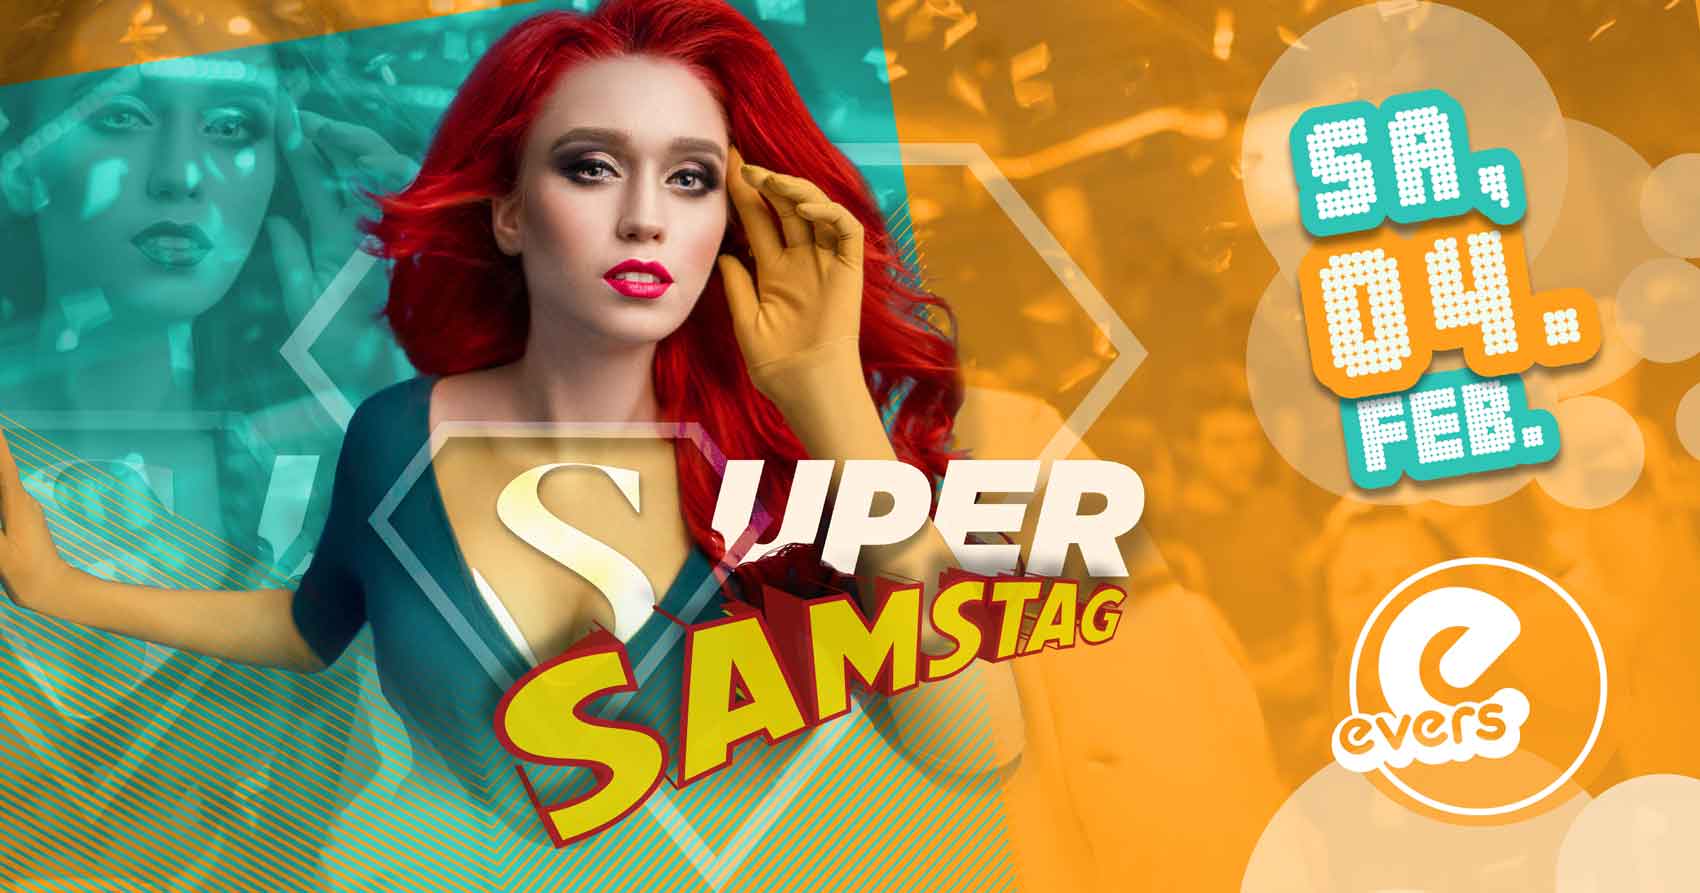 SUPER SAMSTAG - dein Samstagserlebnis im evers | SA 04.02.